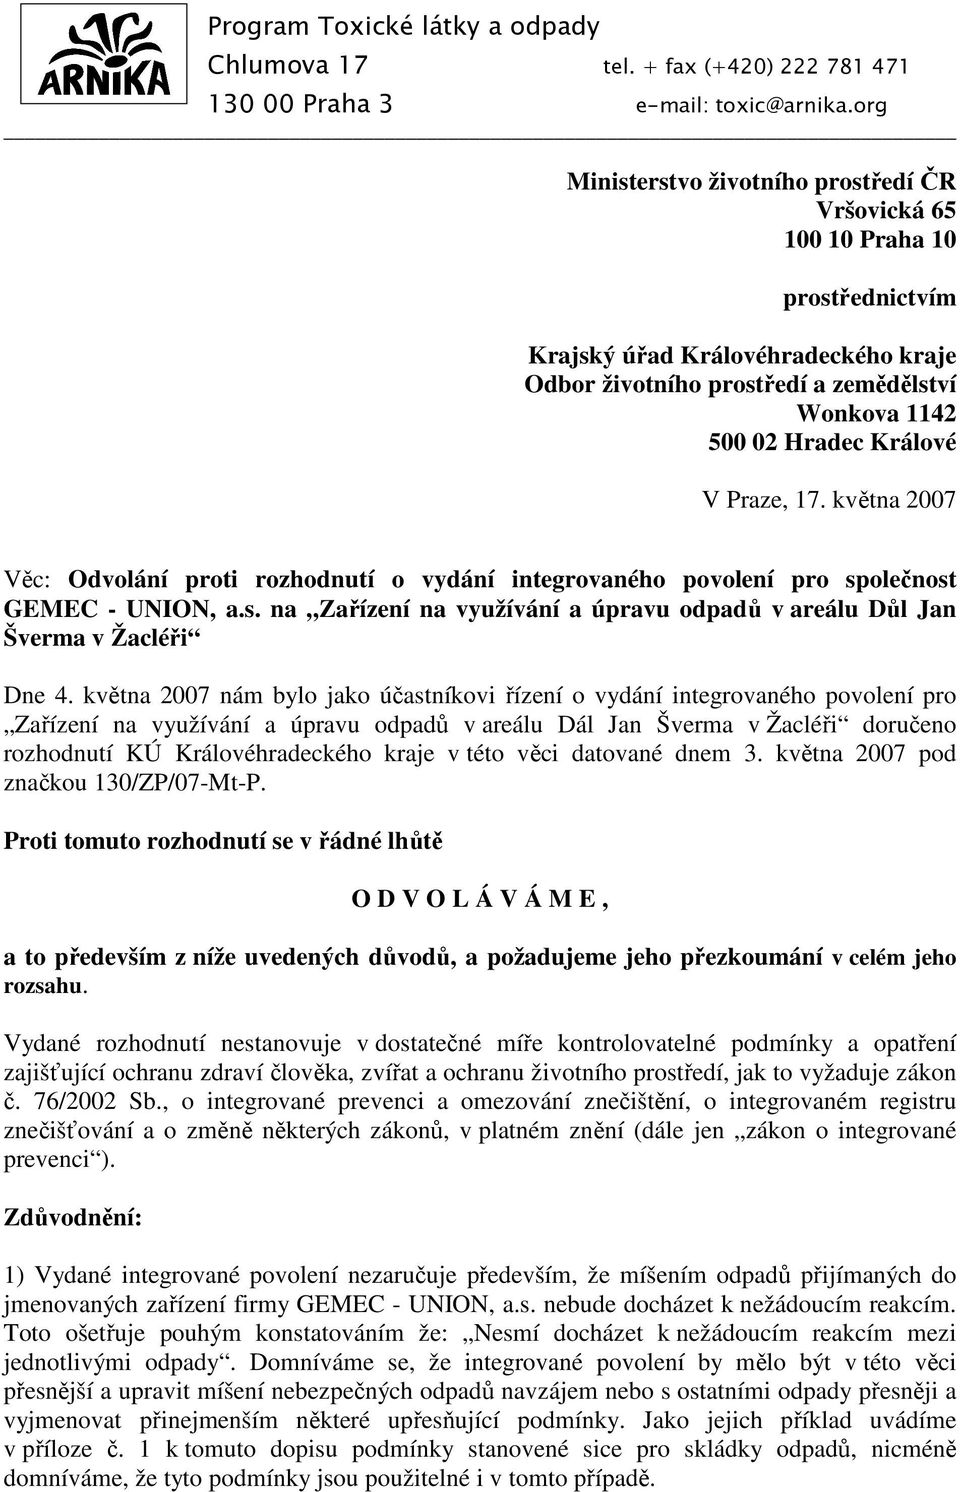 Praze, 17. května 2007 Věc: Odvolání proti rozhodnutí o vydání integrovaného povolení pro společnost GEMEC - UNION, a.s. na Zařízení na využívání a úpravu odpadů v areálu Důl Jan Šverma v Žacléři Dne 4.